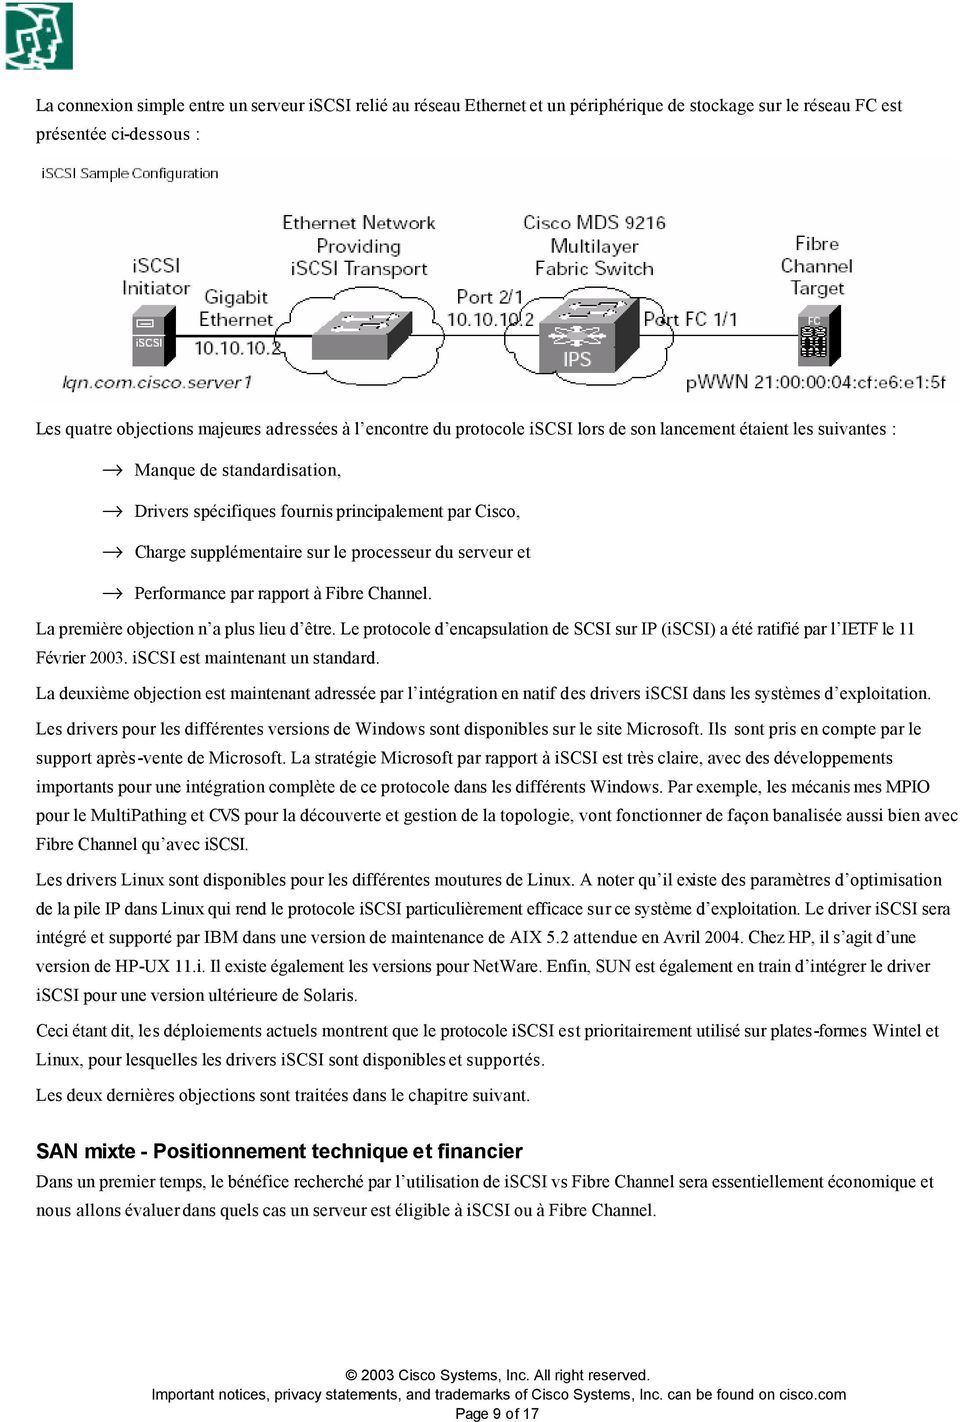 serveur et fi Performance par rapport à Fibre Channel. La première objection n a plus lieu d être. Le protocole d encapsulation de SCSI sur IP (iscsi) a été ratifié par l IETF le 11 Février 2003.